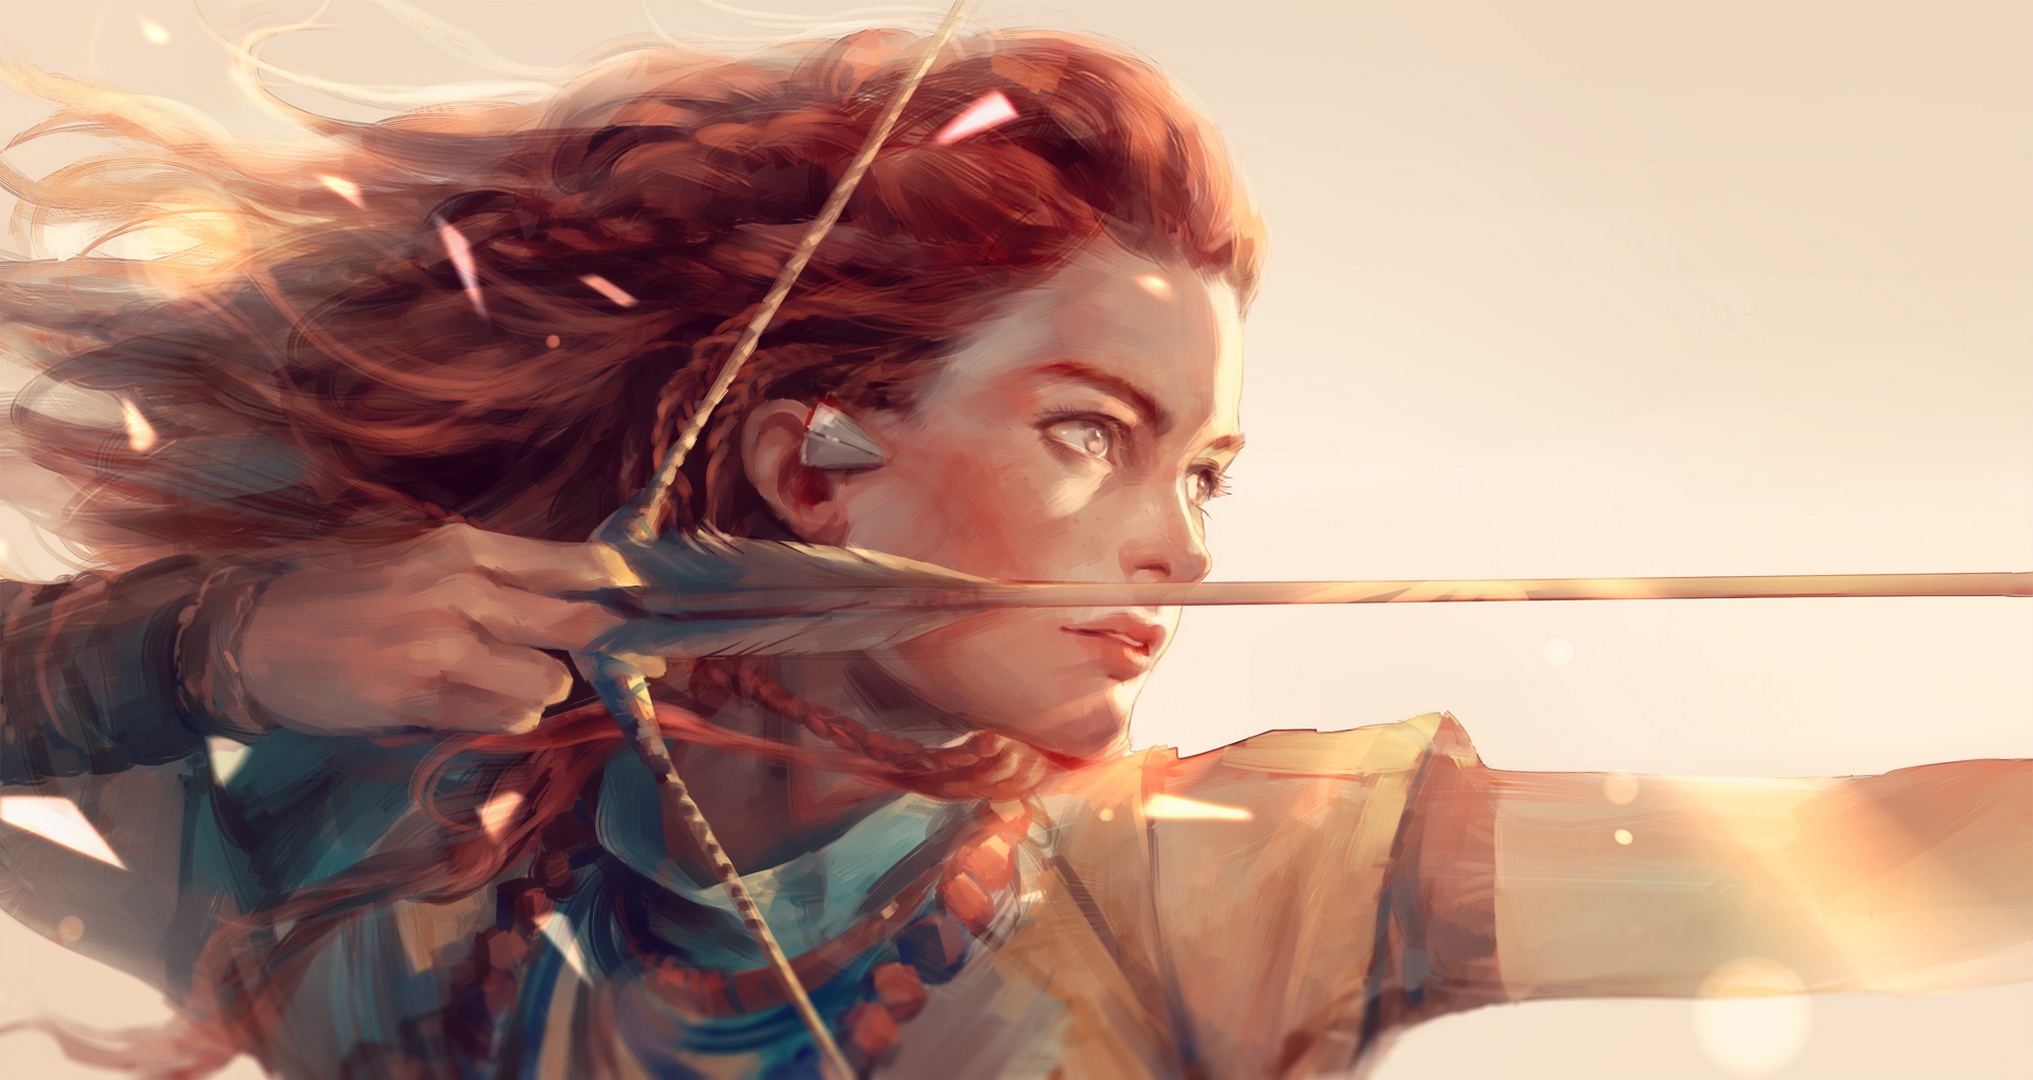 horizon zero dawn, aloy (horizon series), video game, braid, red hair, woman warrior QHD